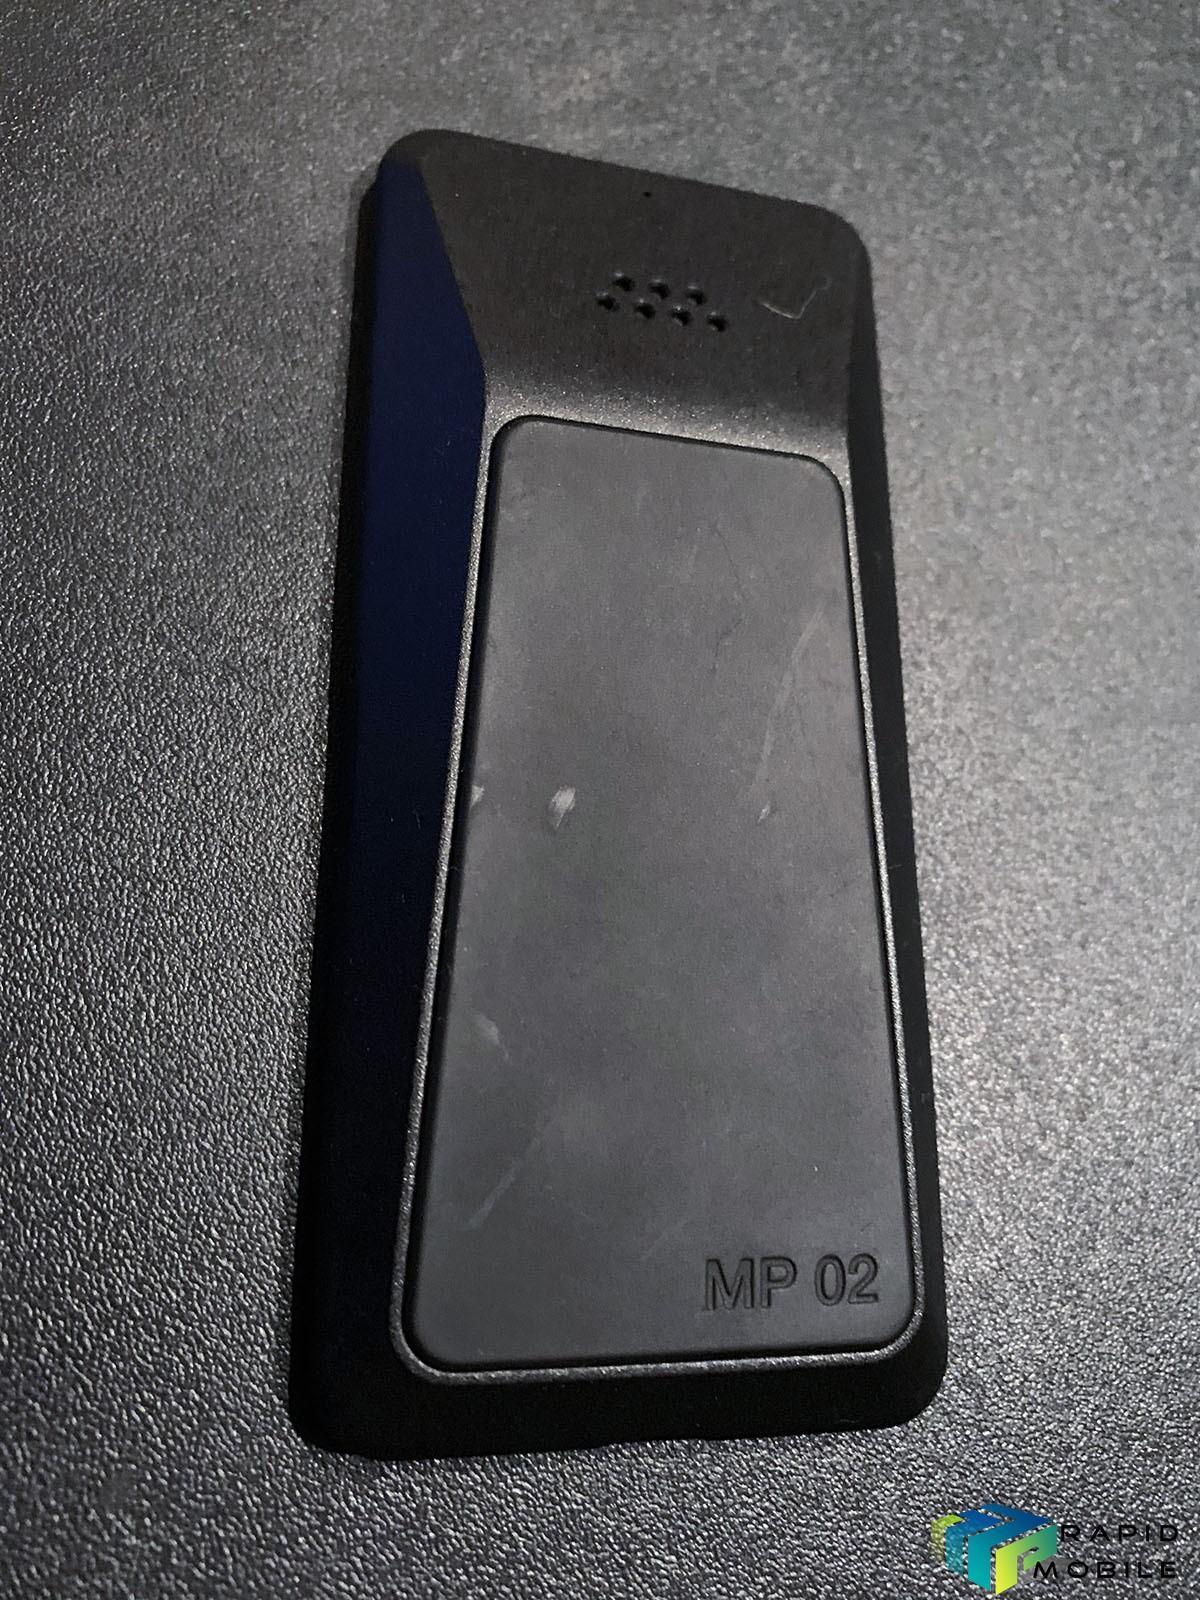 Punkt-MP-02